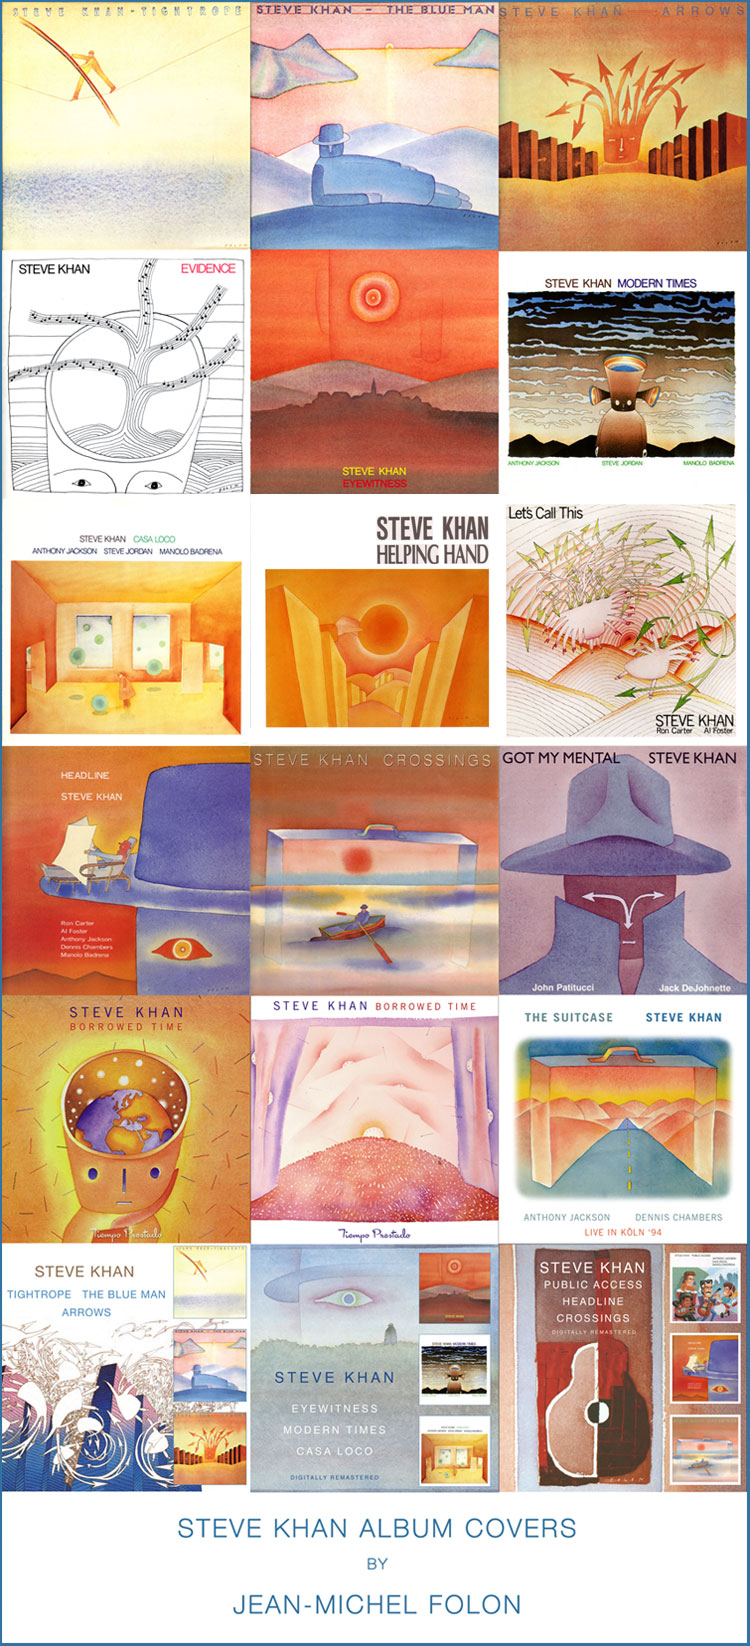 Steve Khan Album Covers by Jean-Michel Folon